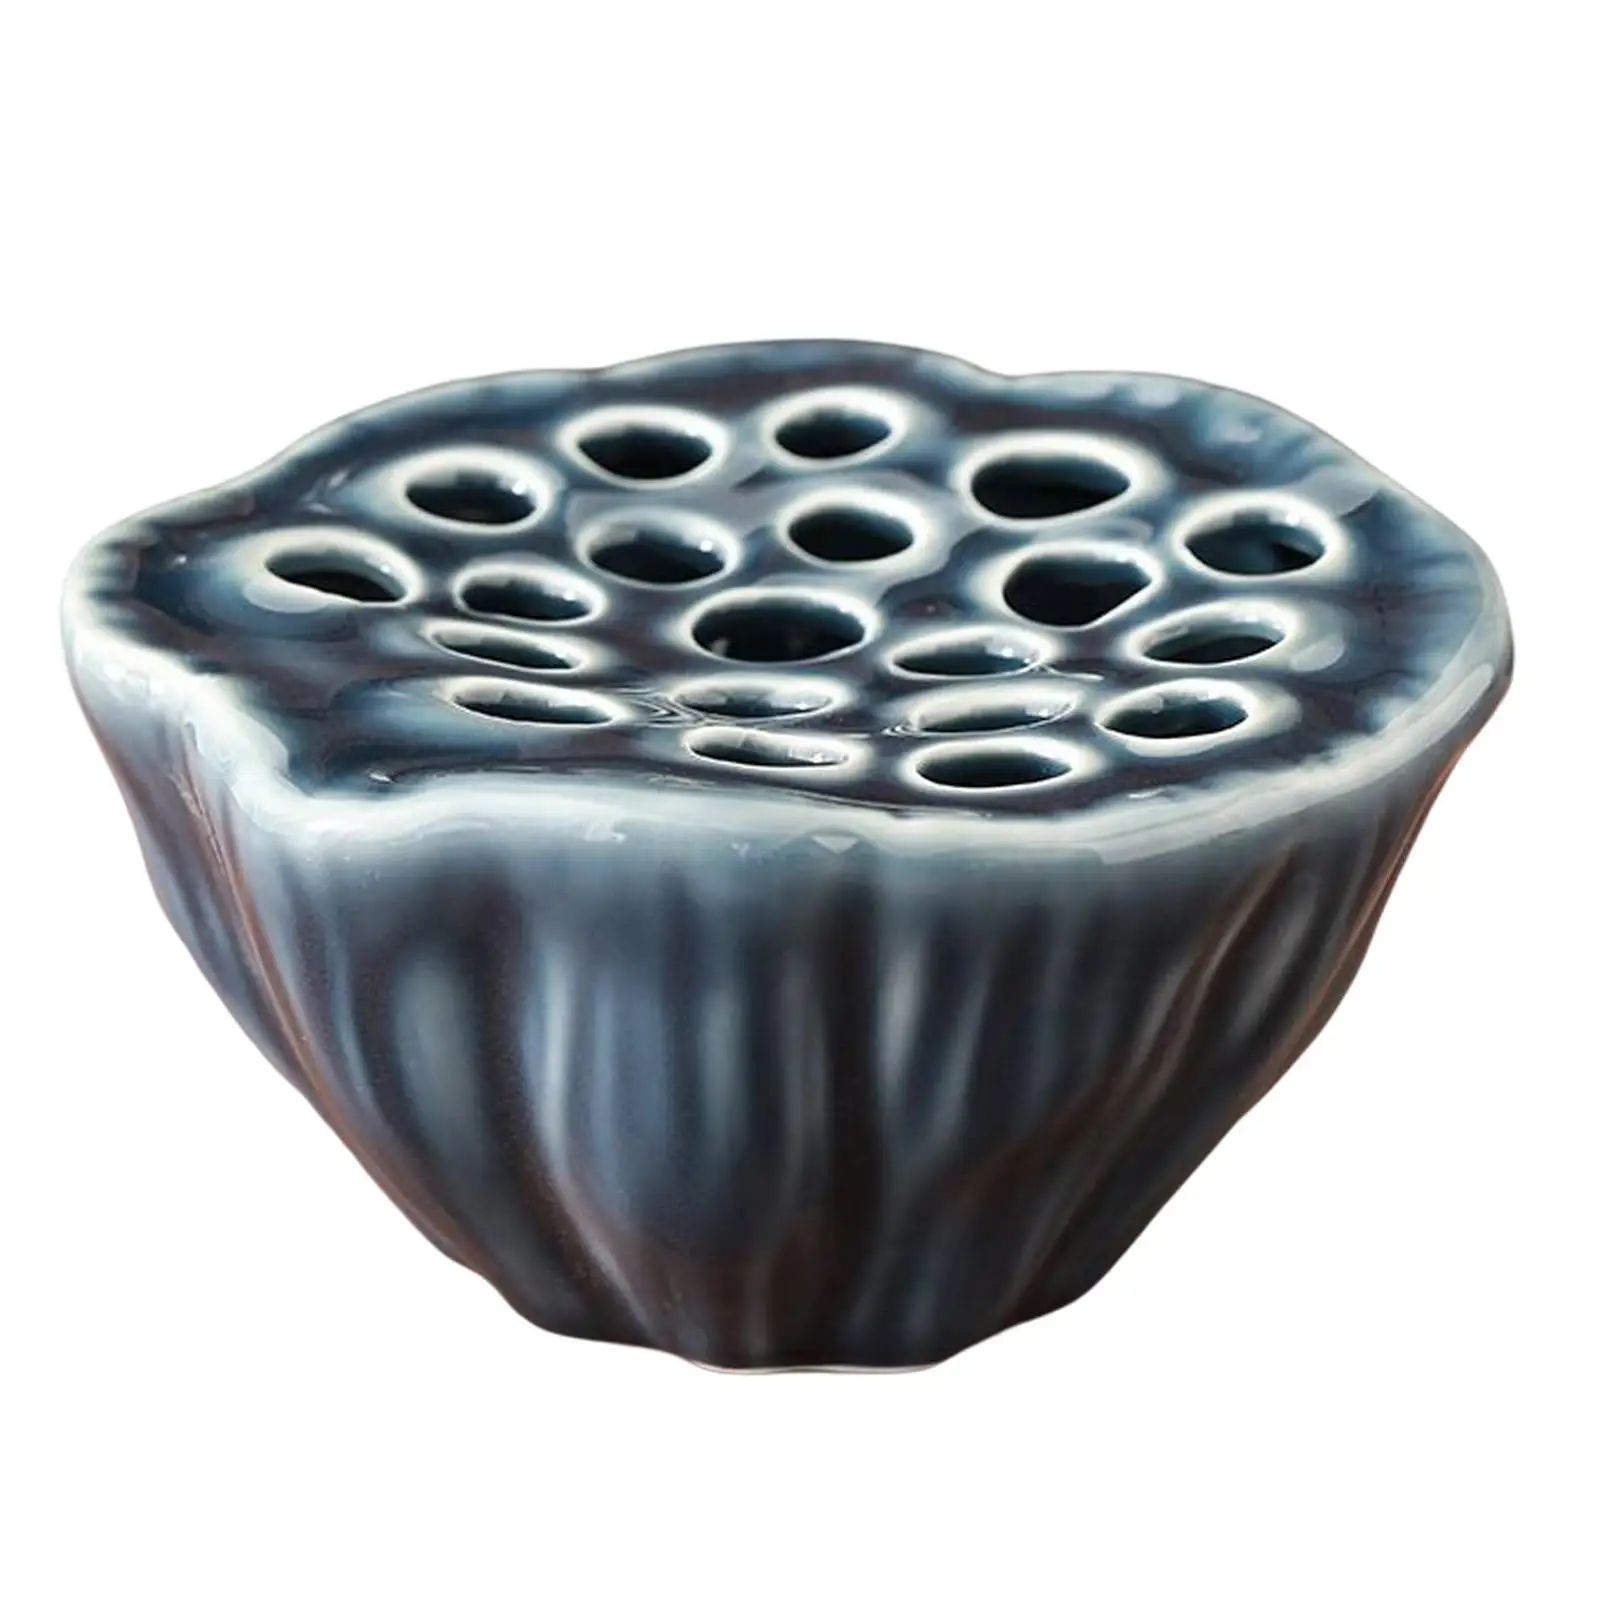 Lotus Pod Shaped Flower Vase Planter Pot Ceramic Flower Pot for Shelf Desk